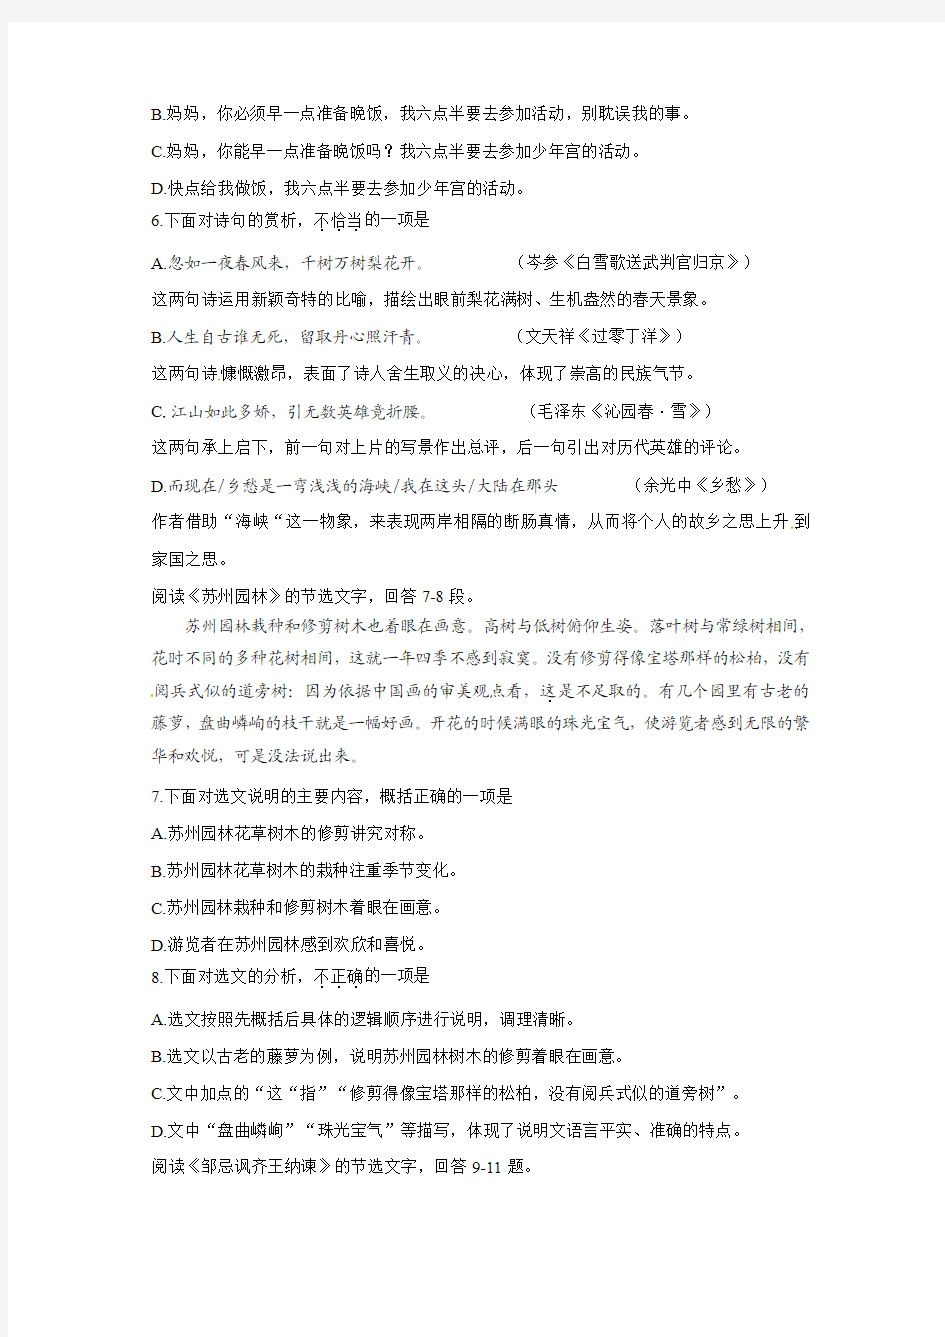 2013年天津中考语文试卷及答案